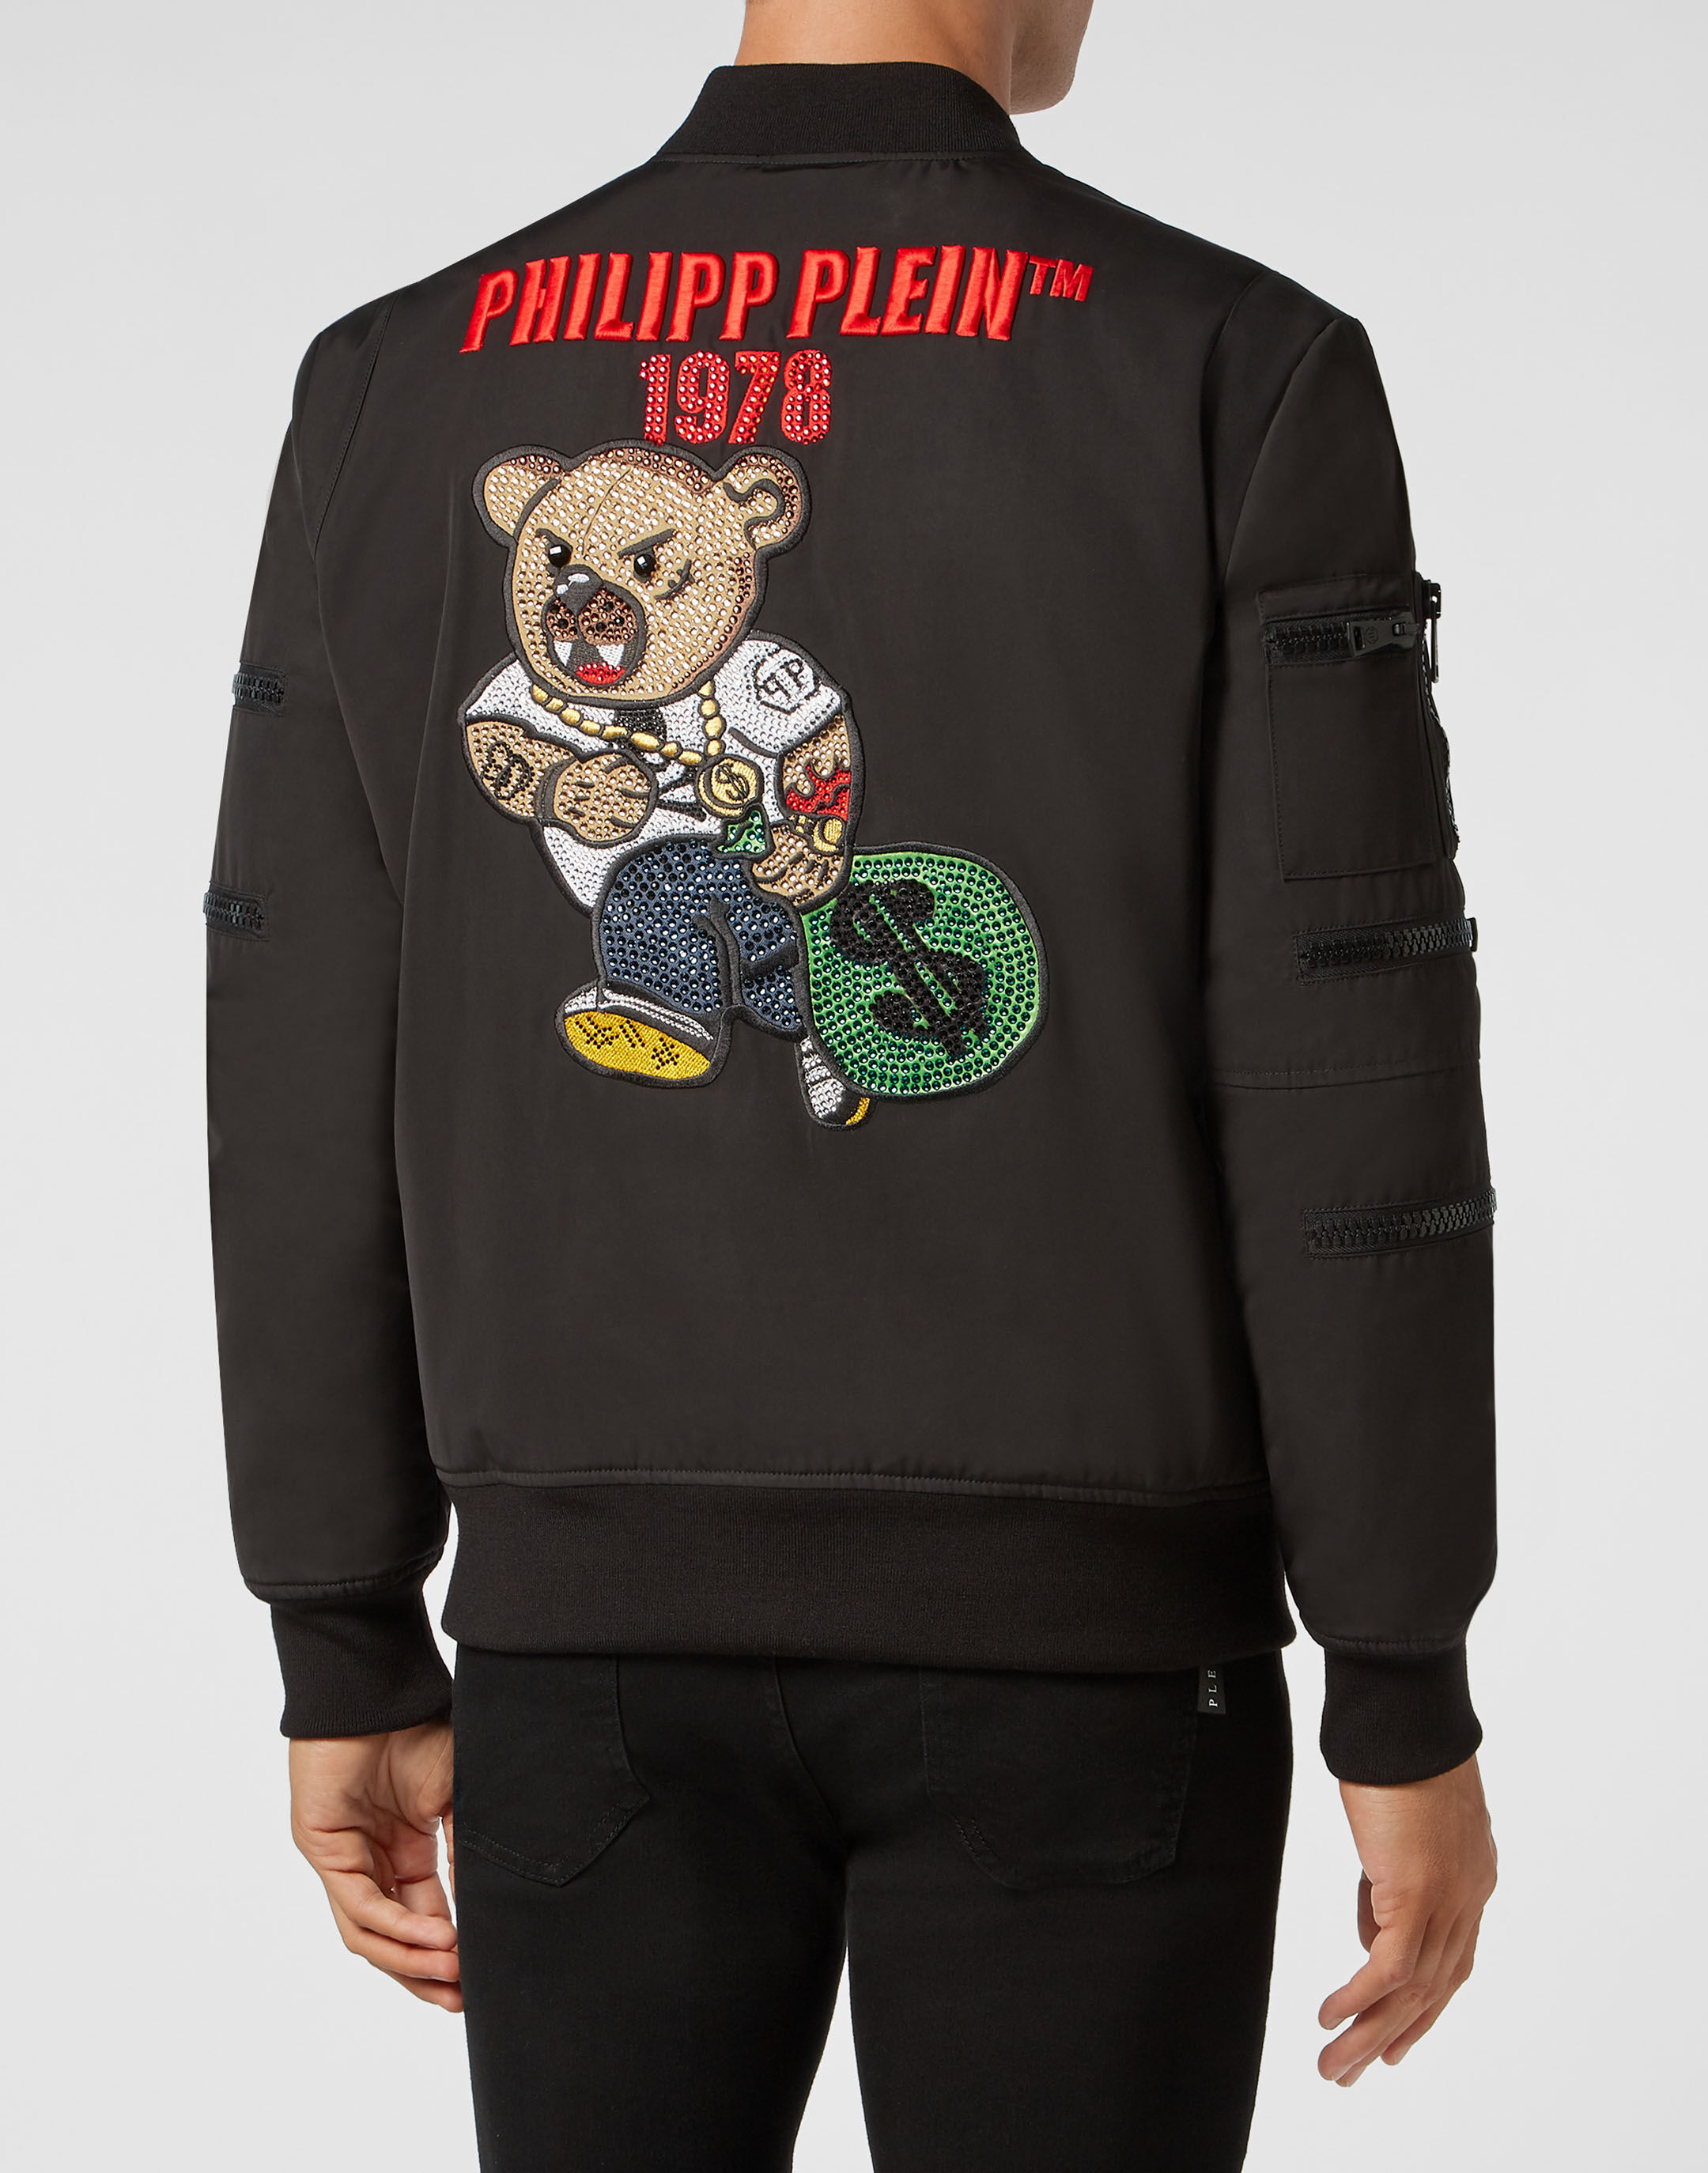 philipp plein couture jacket